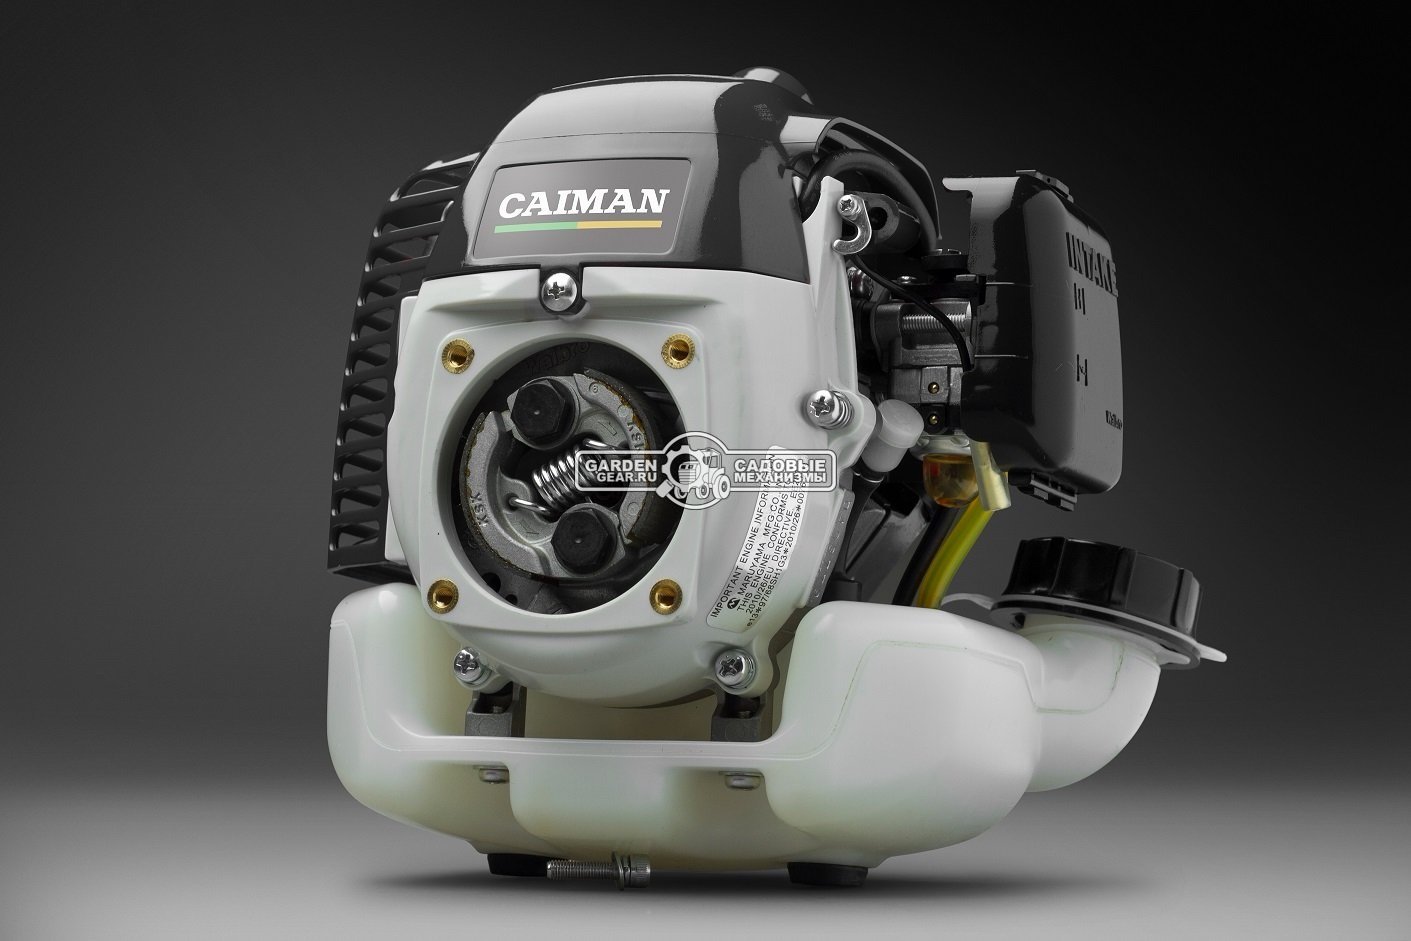 Бензокоса Caiman WX21 Promo (JPN, 0,54 кВт/0,75 л.с., 19,8 см3., Maruyama EE203, диск Katana 34Z 230 мм., ремень, 4,5 кг.)